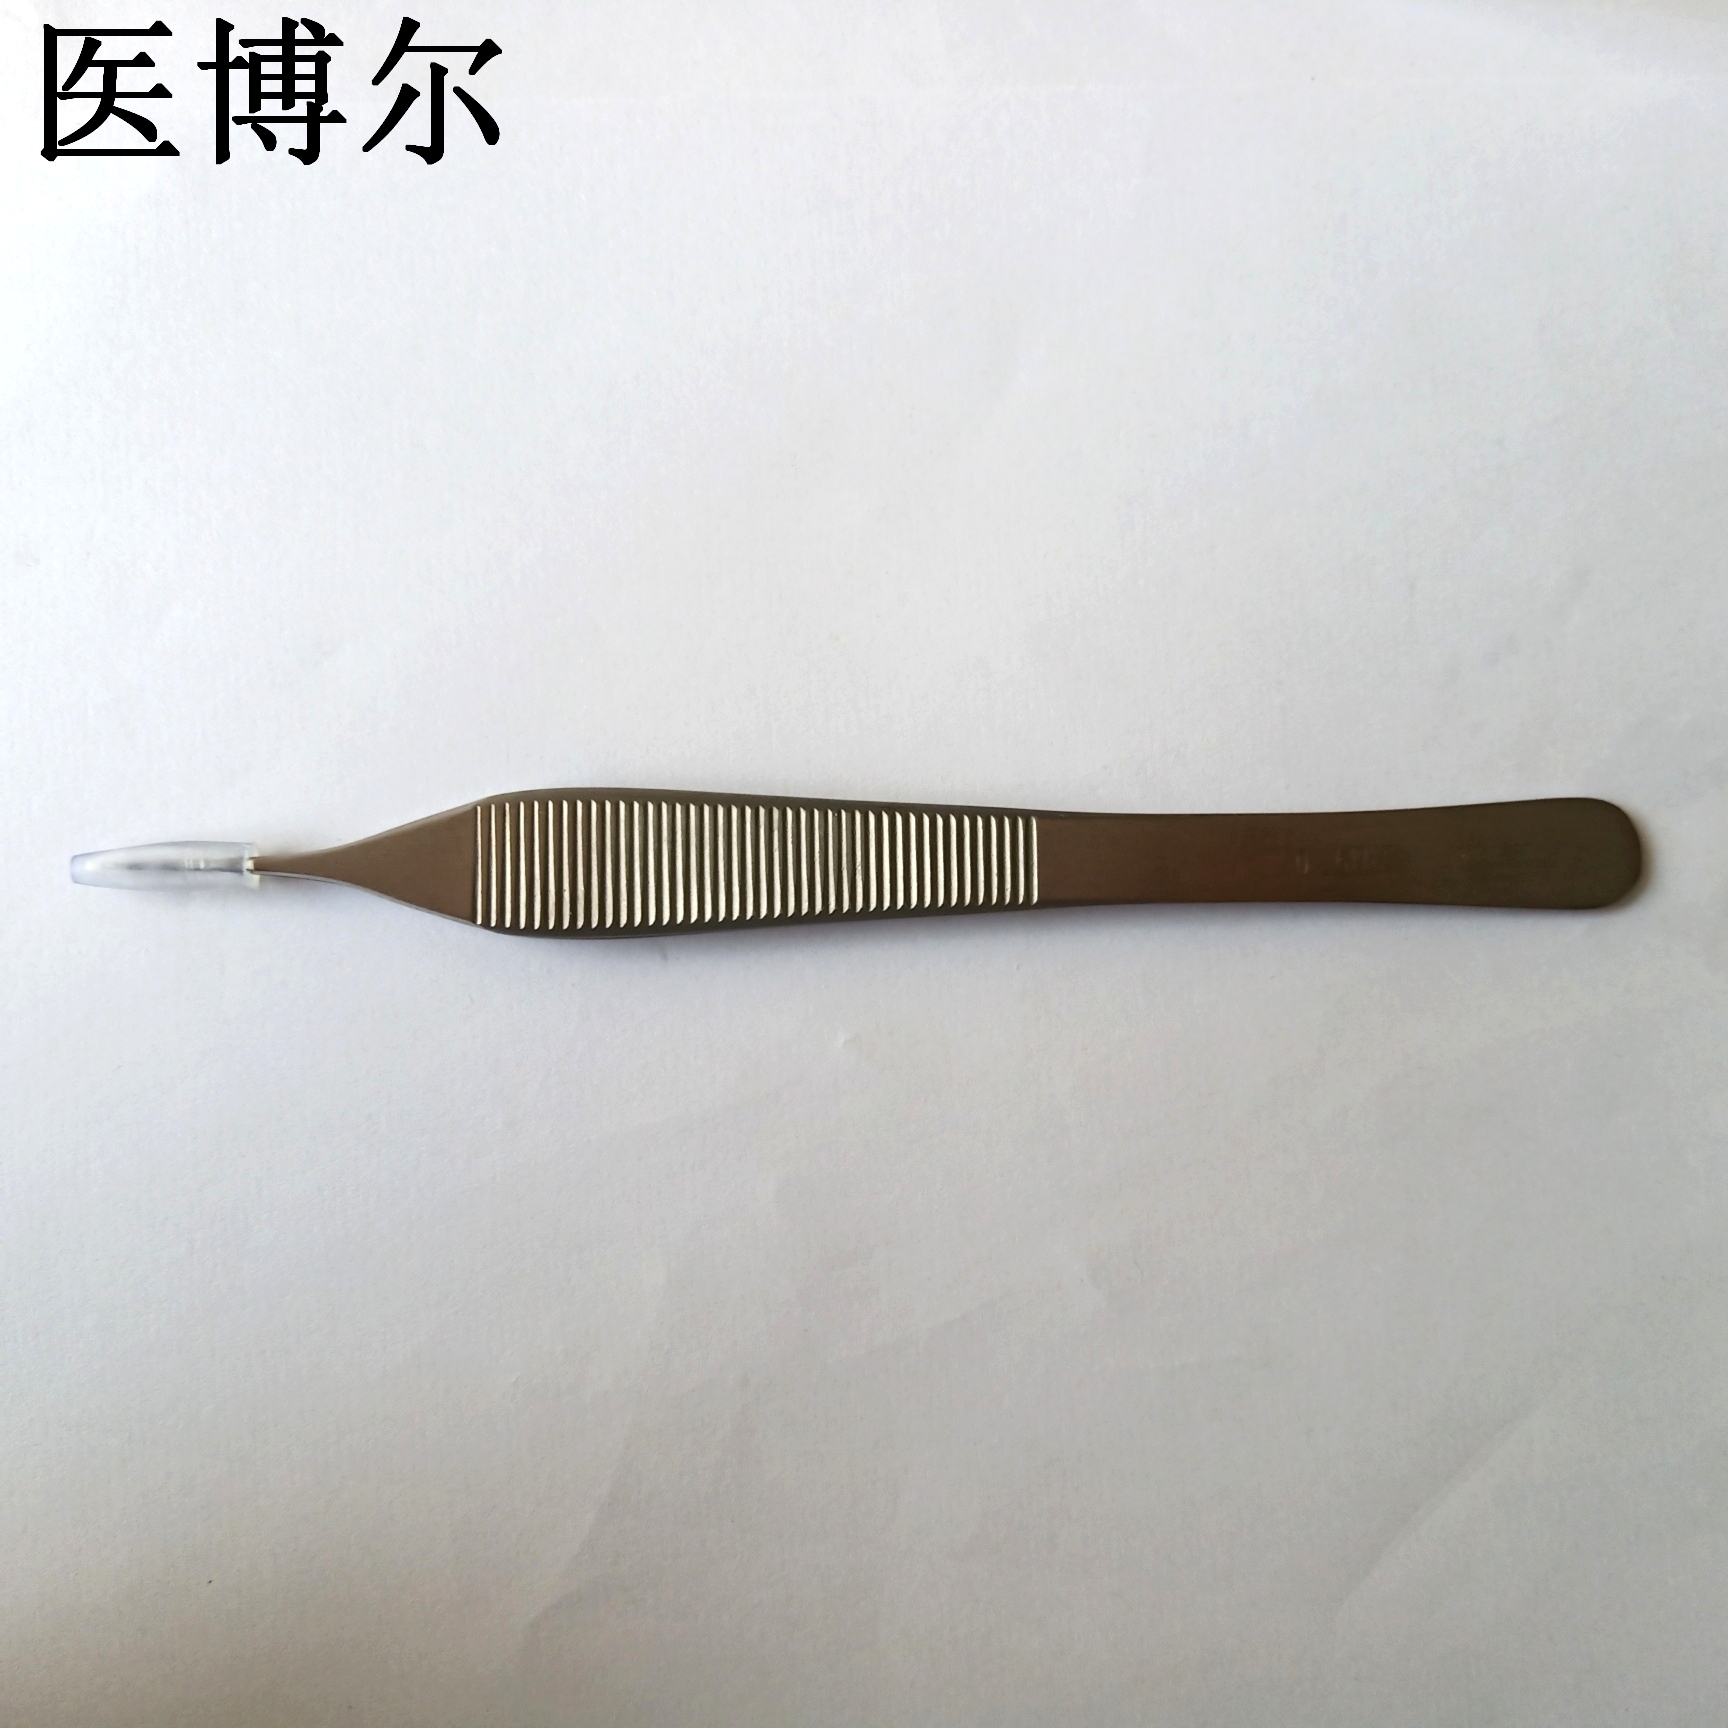 14cm整形镊0 (5)_看图王.jpg